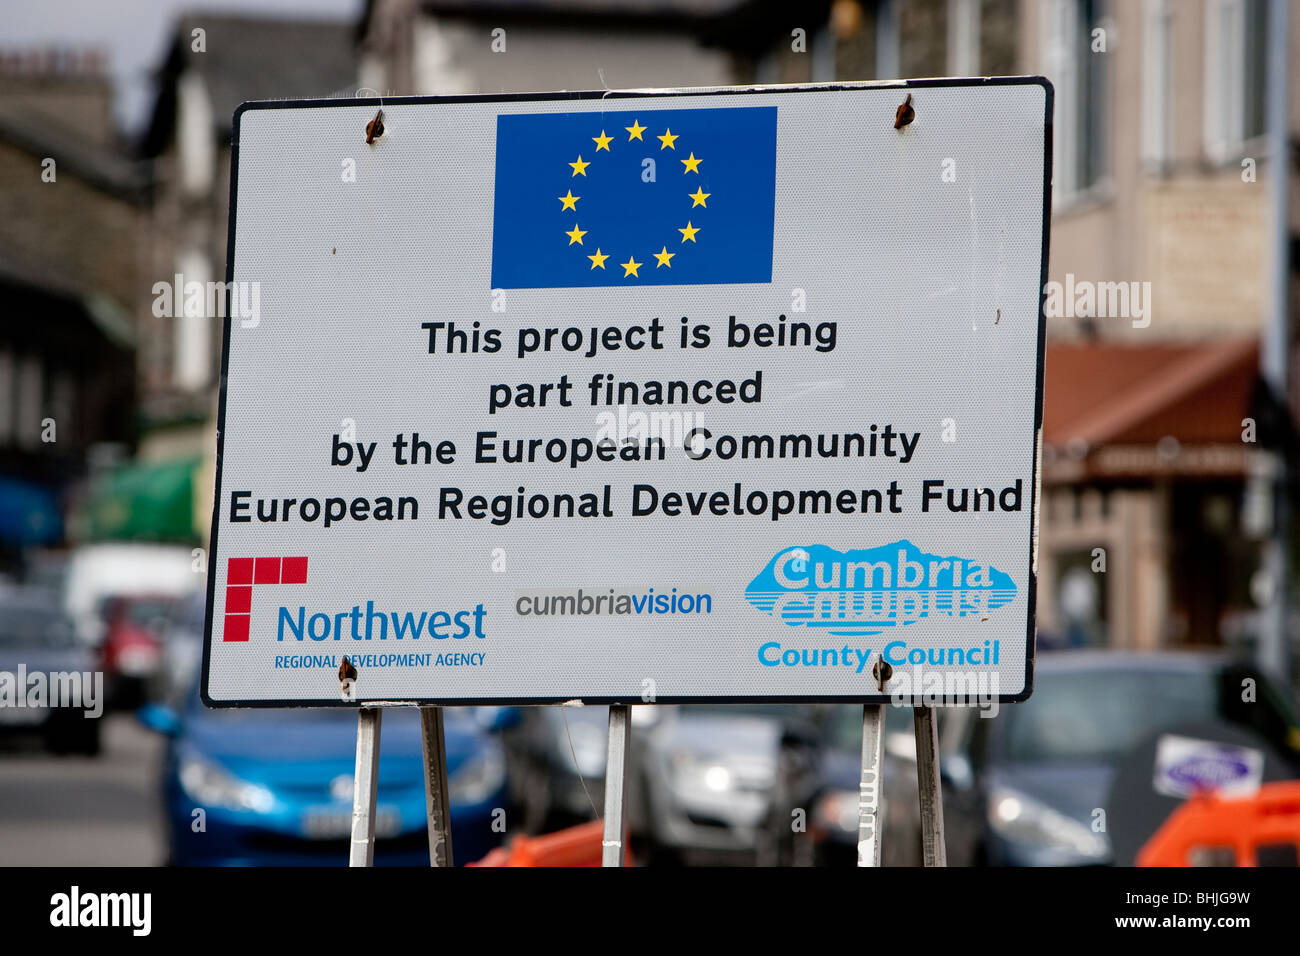 Ce projet est en partie financé par la Communauté européenne Fonds européen de développement régional et le conseil du comté de Cumbria Banque D'Images